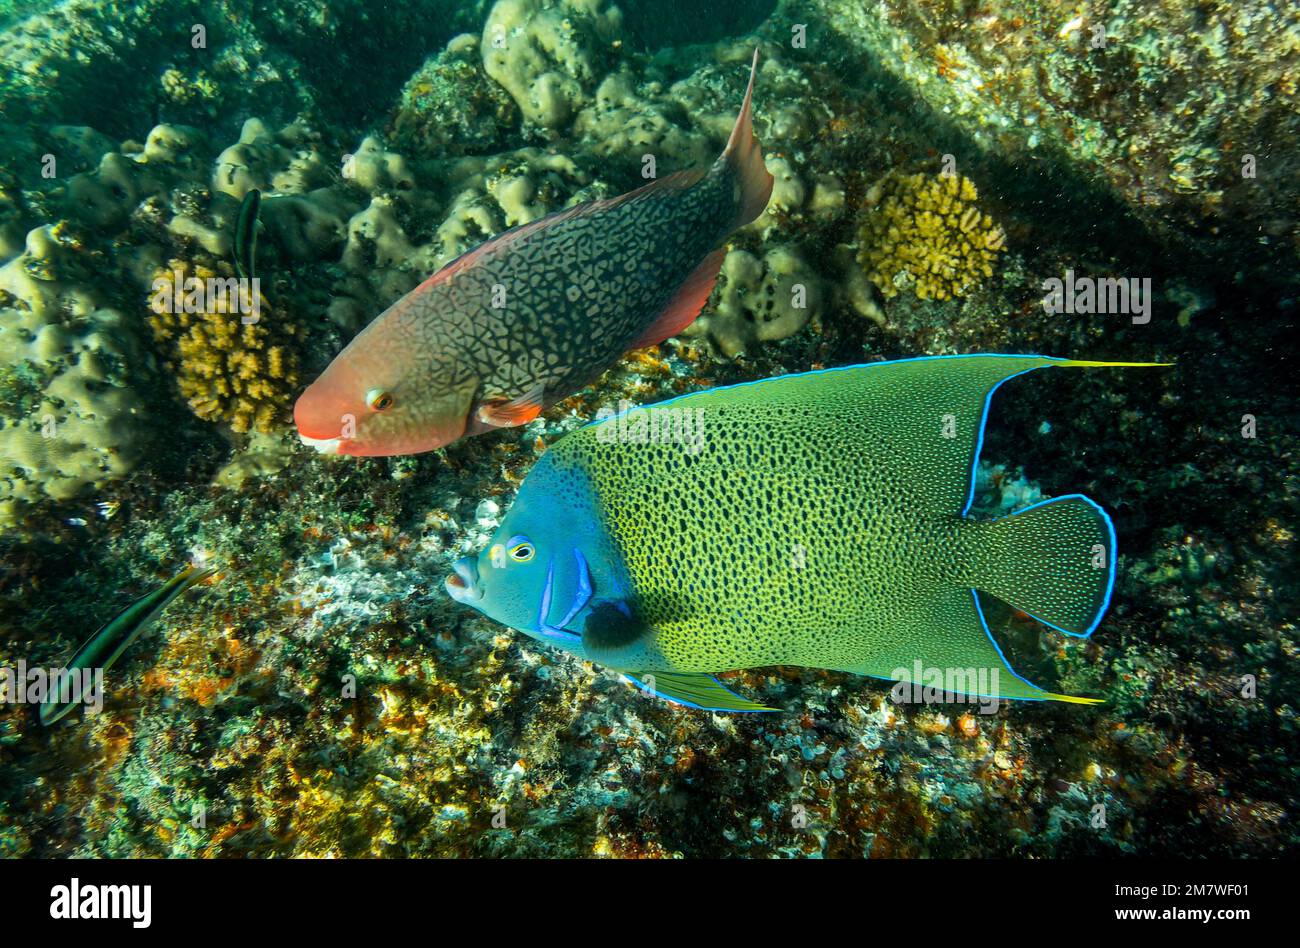 Vue rapprochée d'un poisson semi-angelcle (Pomacanthus semicirculatus) et d'un parrotfish Ember (Scarus rubroviolaceus) près de l'île Saint-Pierre - Seychelles Banque D'Images